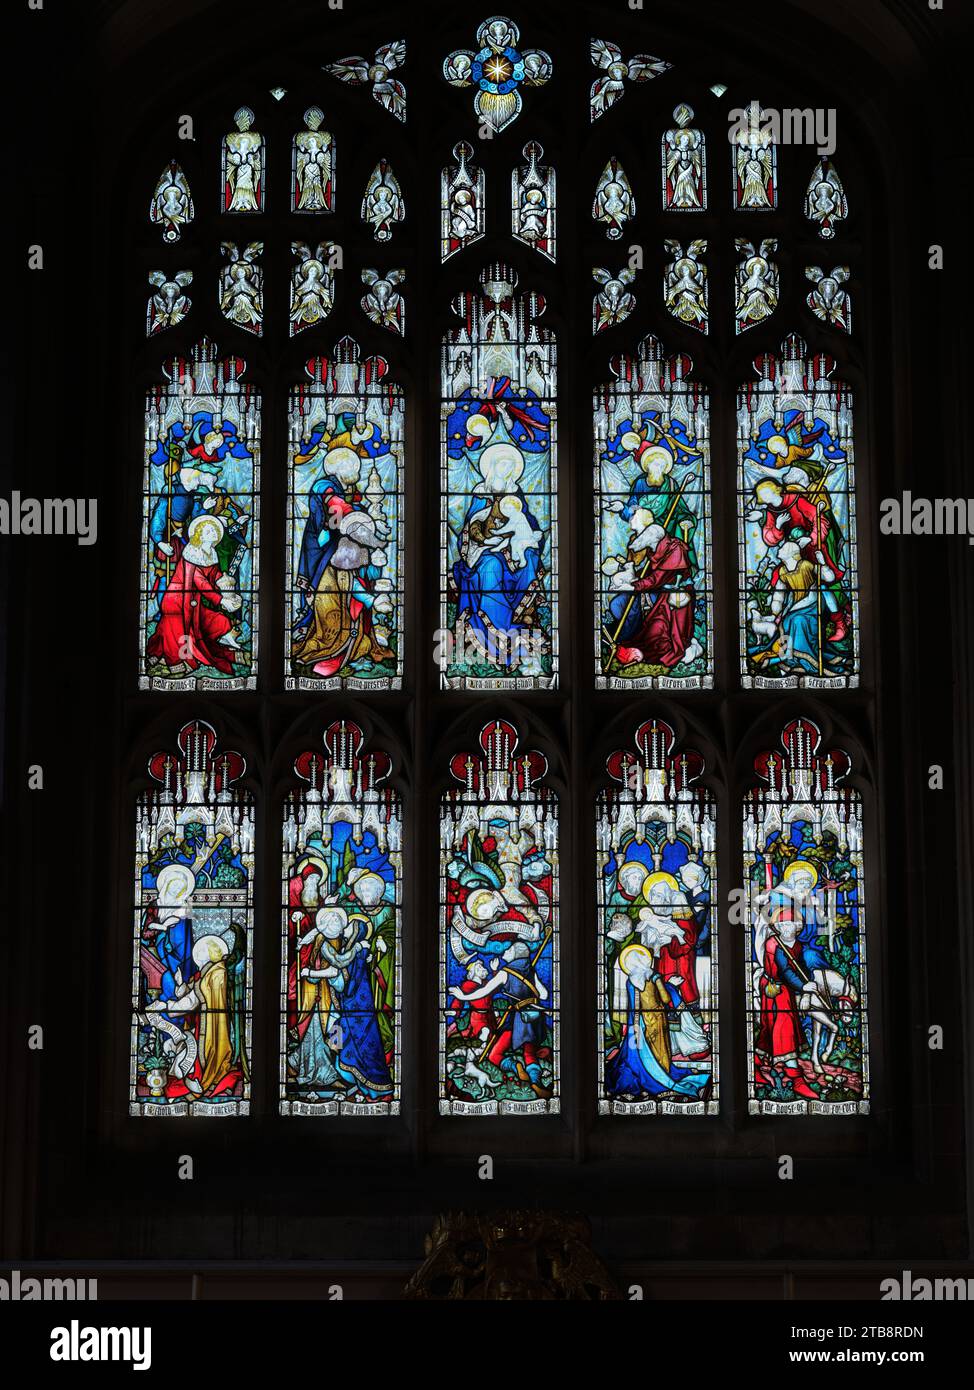 Vetrata, raffigurante eventi legati alla nascita di Gesù Cristo, nella chiesa universitaria di Santa Maria, Cambridge, Inghilterra. Foto Stock